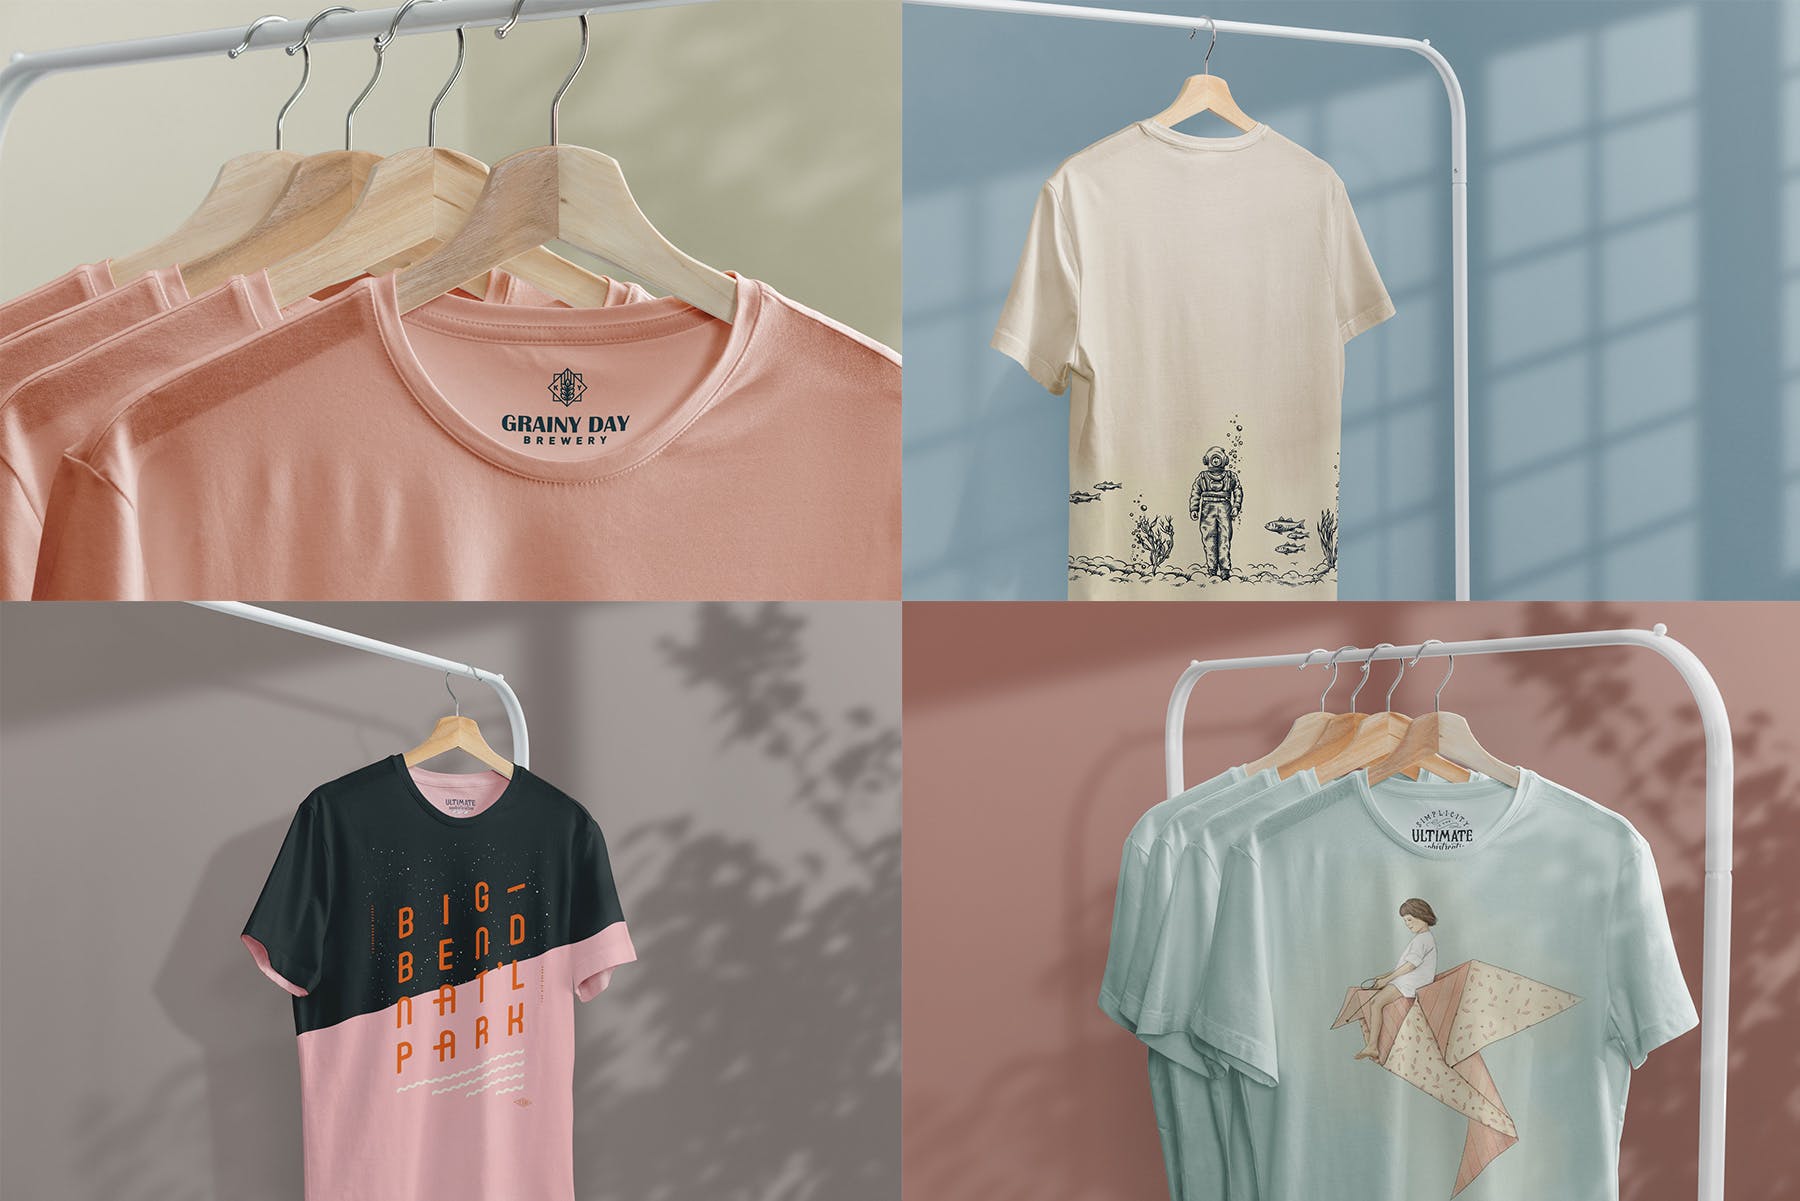 简易晾衣架T恤设计效果图样机非凡图库精选 T-Shirt Mock-Up on Hanger插图(9)